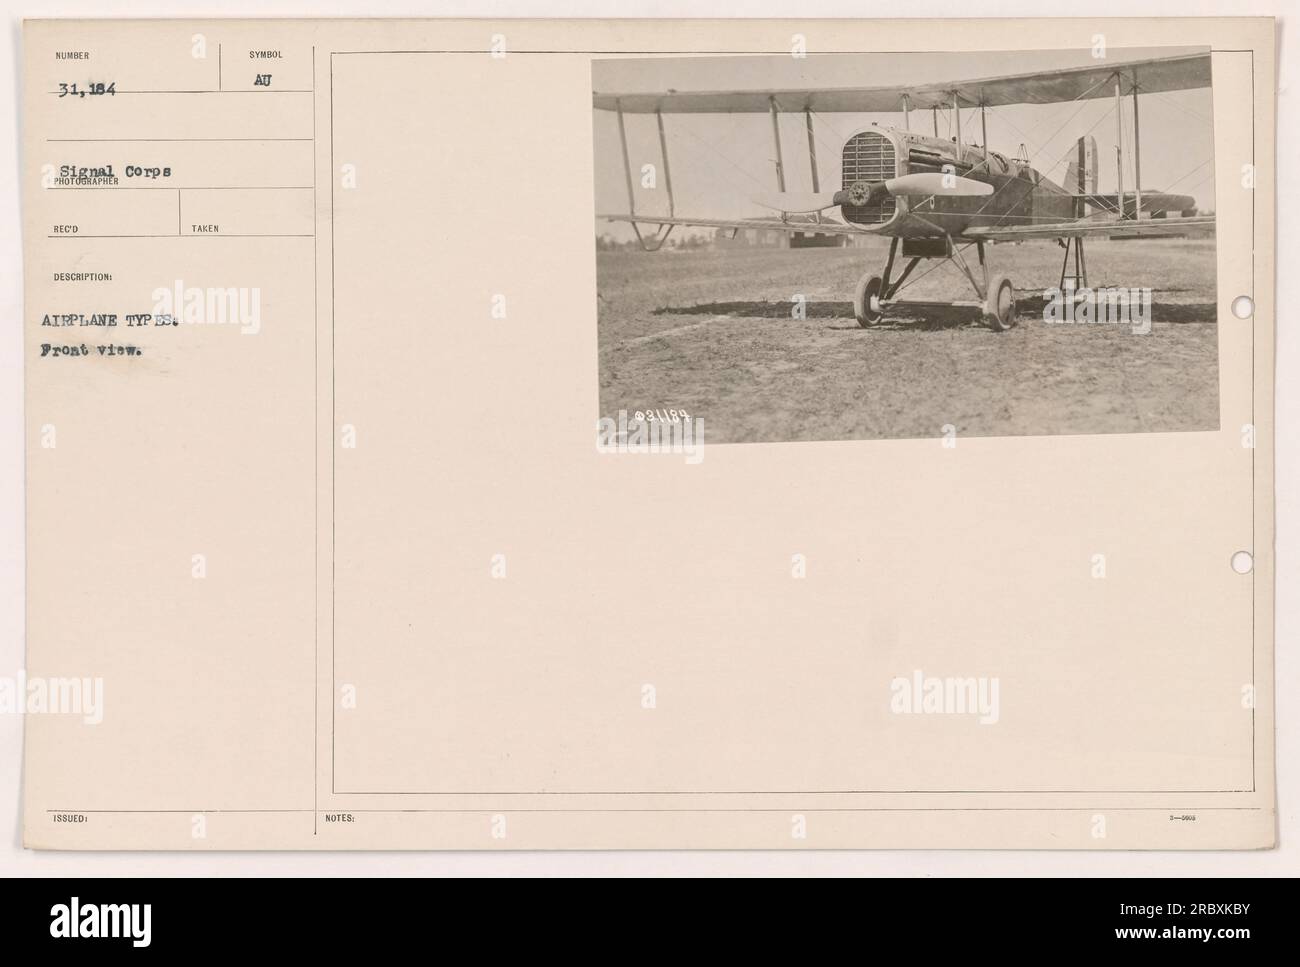 'Foto von amerikanischen Militärflugzeugtypen im Ersten Weltkrieg. Dieses Bild zeigt eine Frontansicht verschiedener Flugzeugmodelle. Bereitgestellt vom Signalkorps, Nummer 31.184. Ausgestellt von ATT mit zusätzlichen Hinweisen zu Bildnummer 31.189." Stockfoto